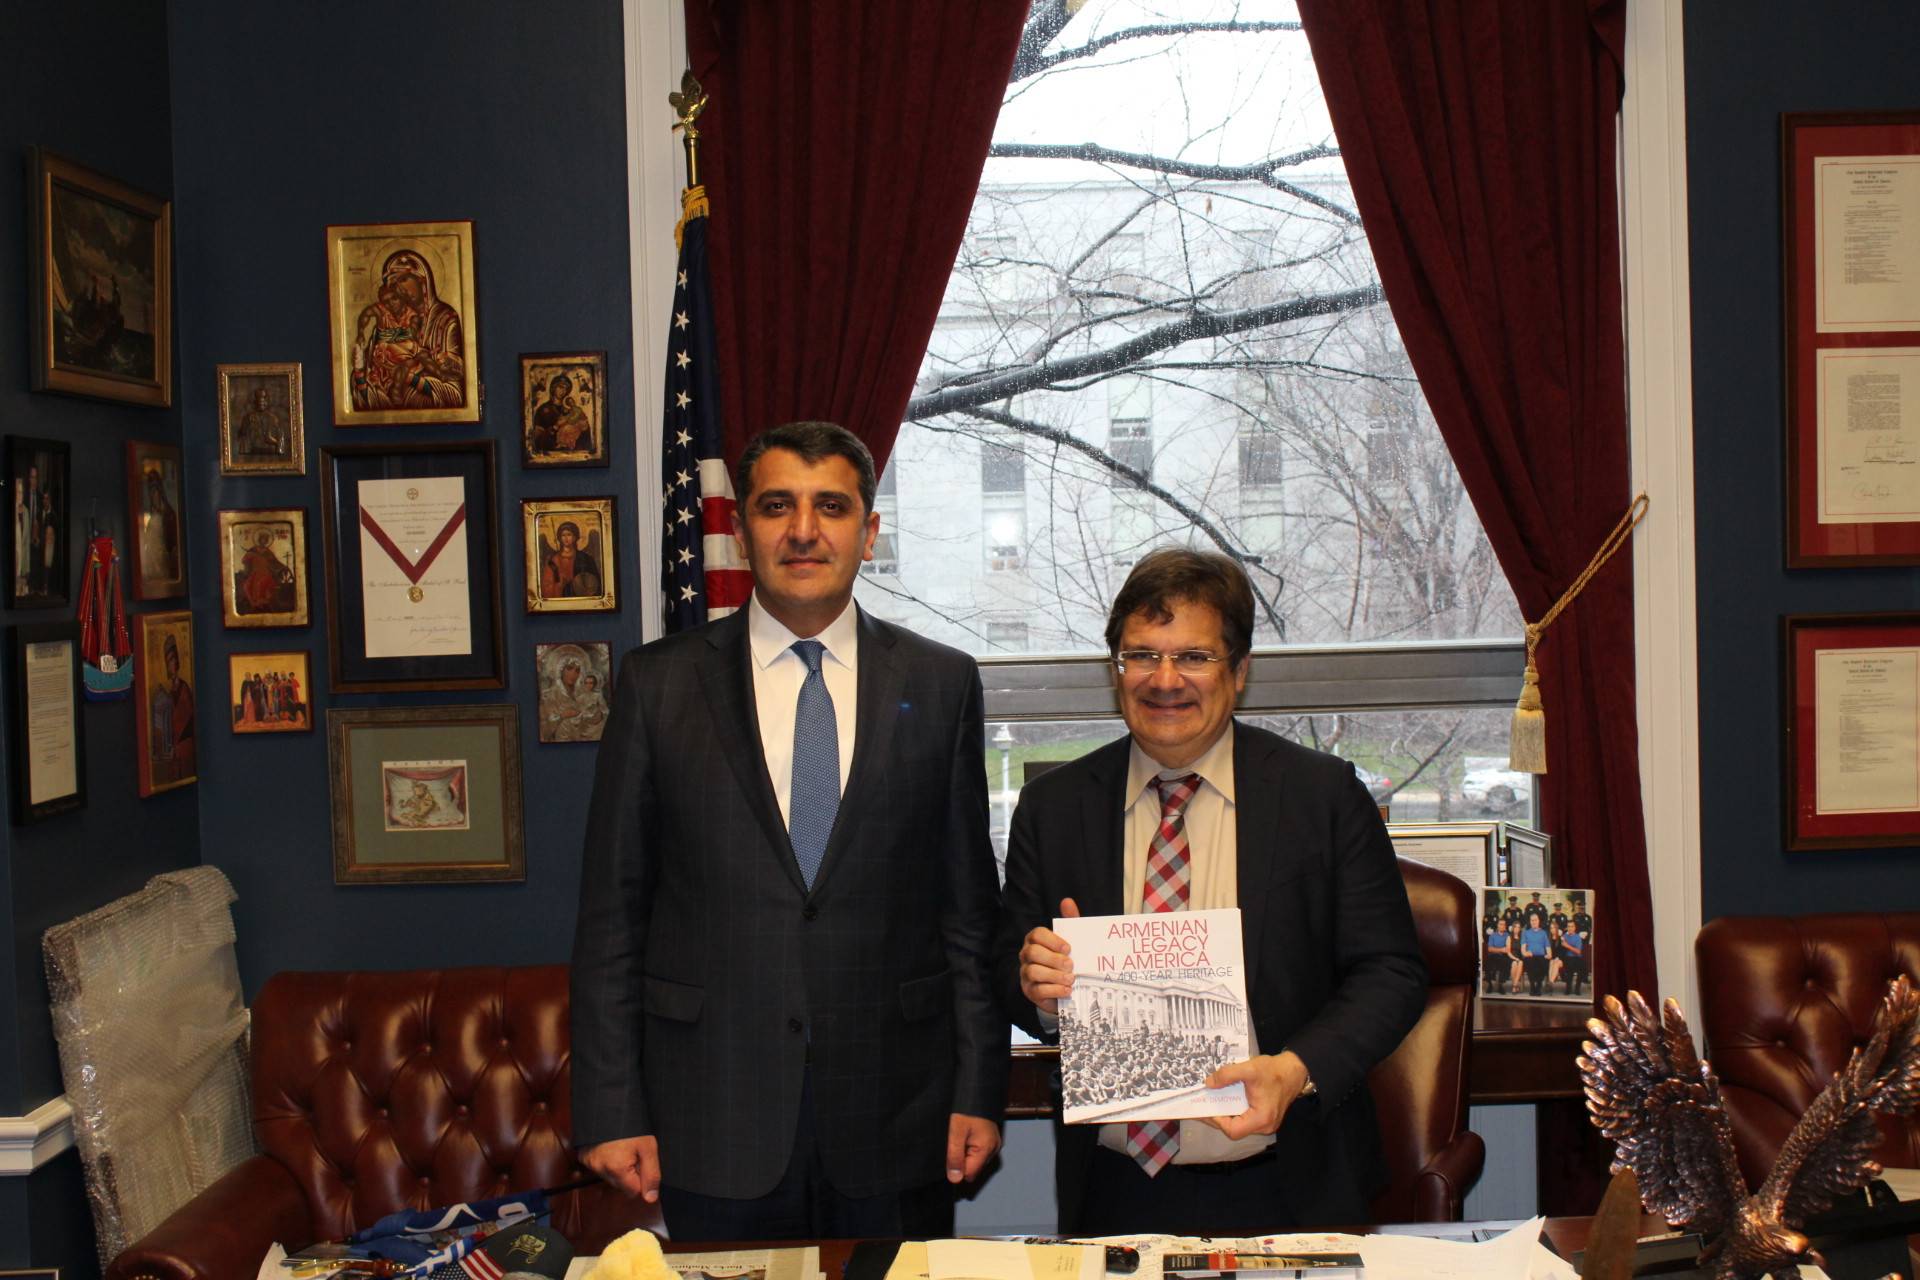 Ambassador Nersesyan’s meeting with Congressman Bilirakis